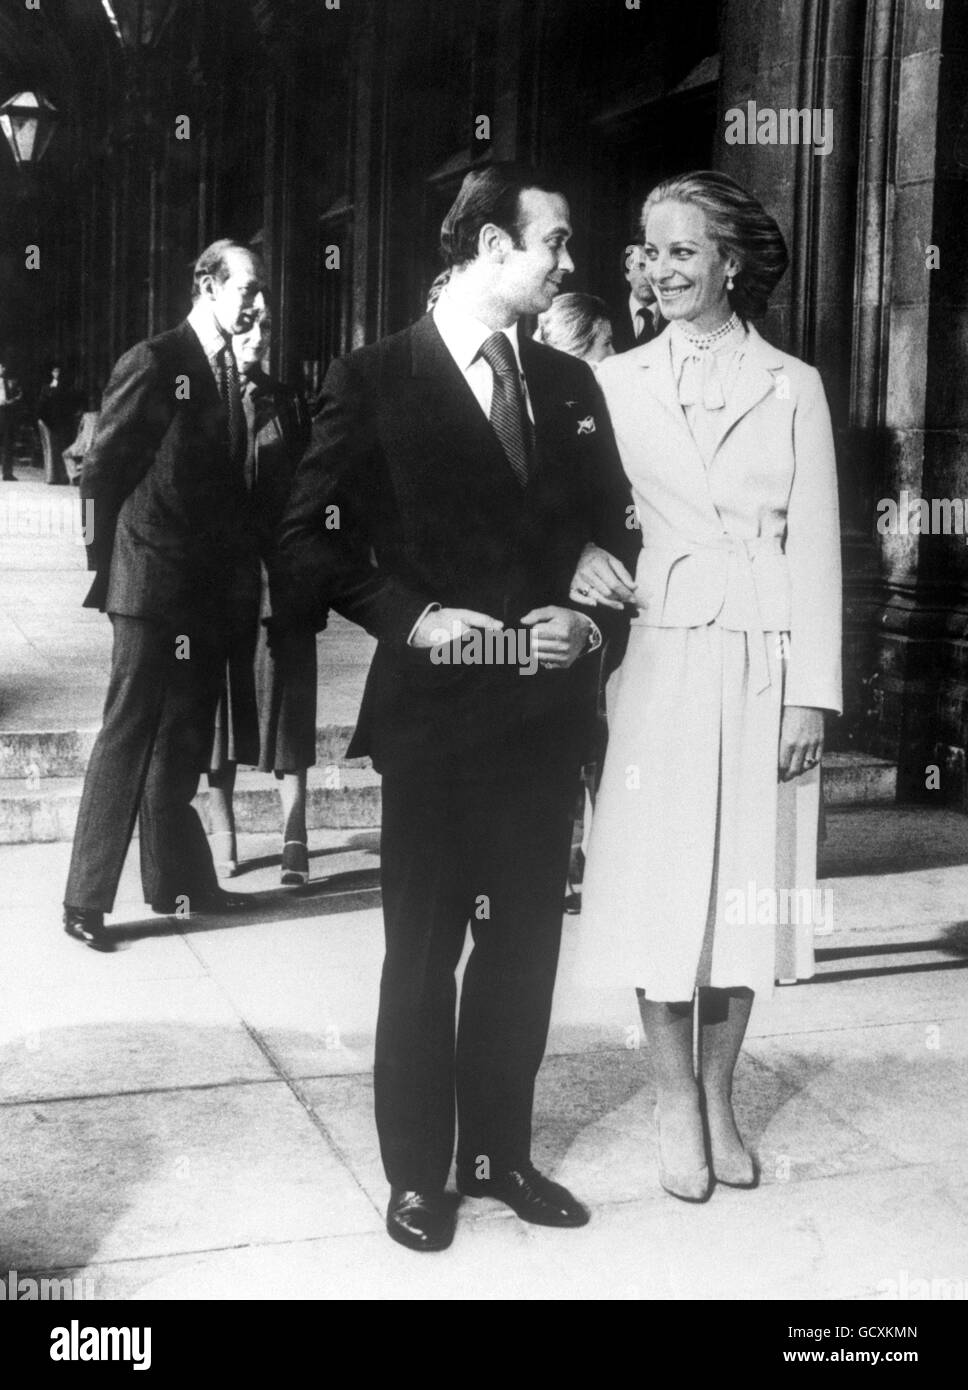 Le prince Michael de Kent épousa la baronne Marie-Christine von Reibnitz lors d'une cérémonie civile à l'hôtel de ville de Vienne. Banque D'Images